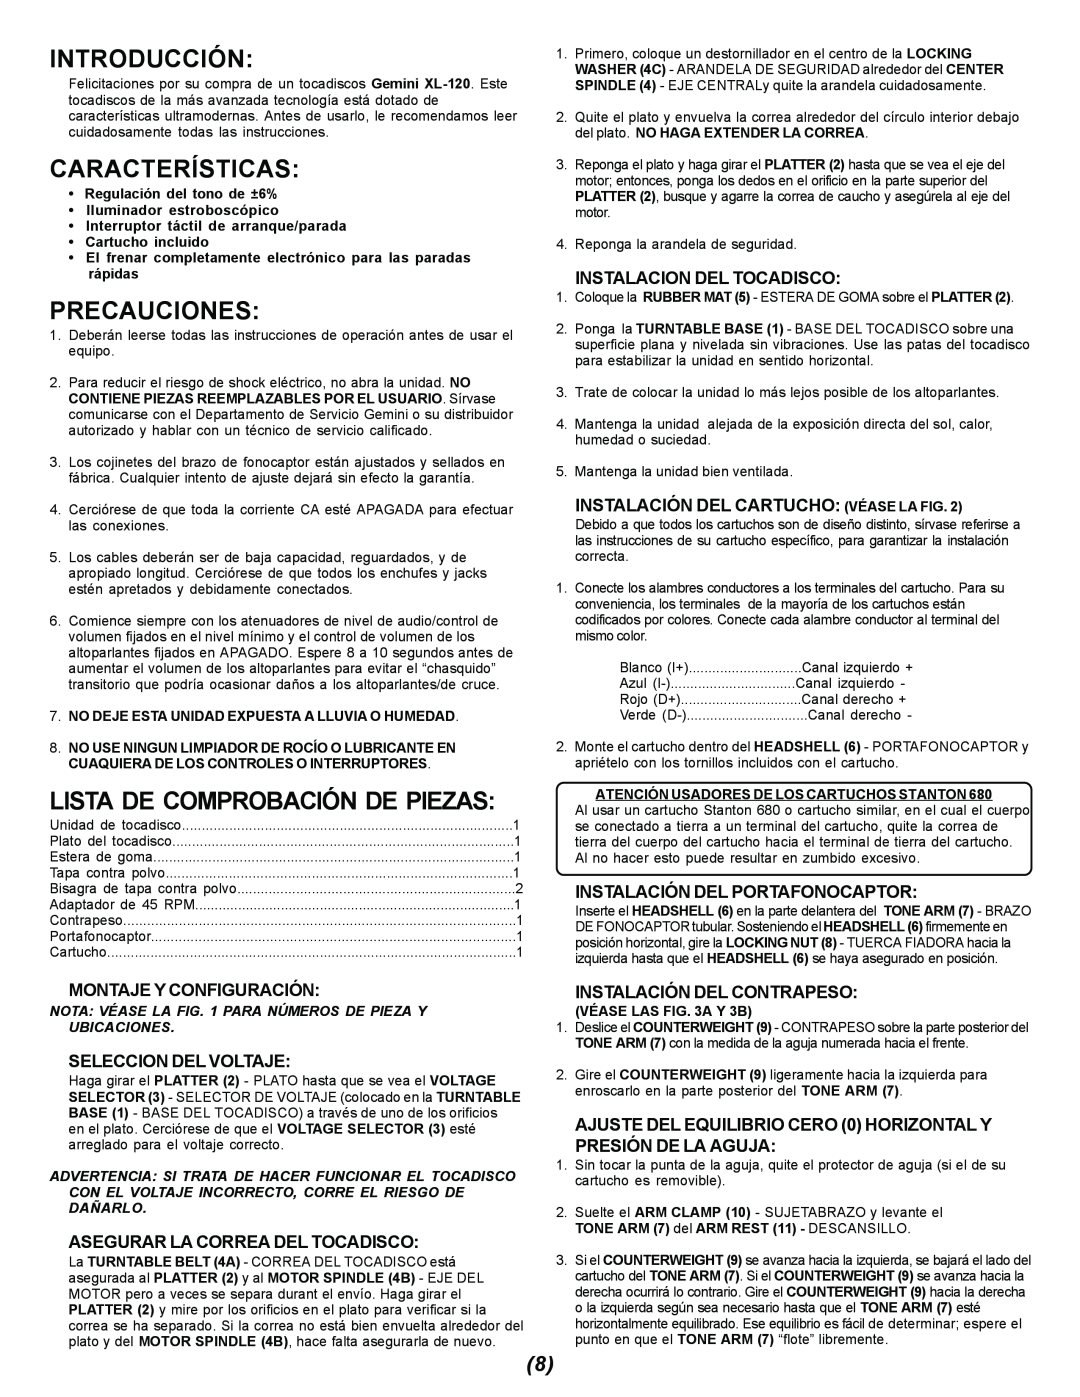 Gemini XL-120 manual Introducción, Características, Precauciones, Montaje Y Configuración, Seleccion Del Voltaje 